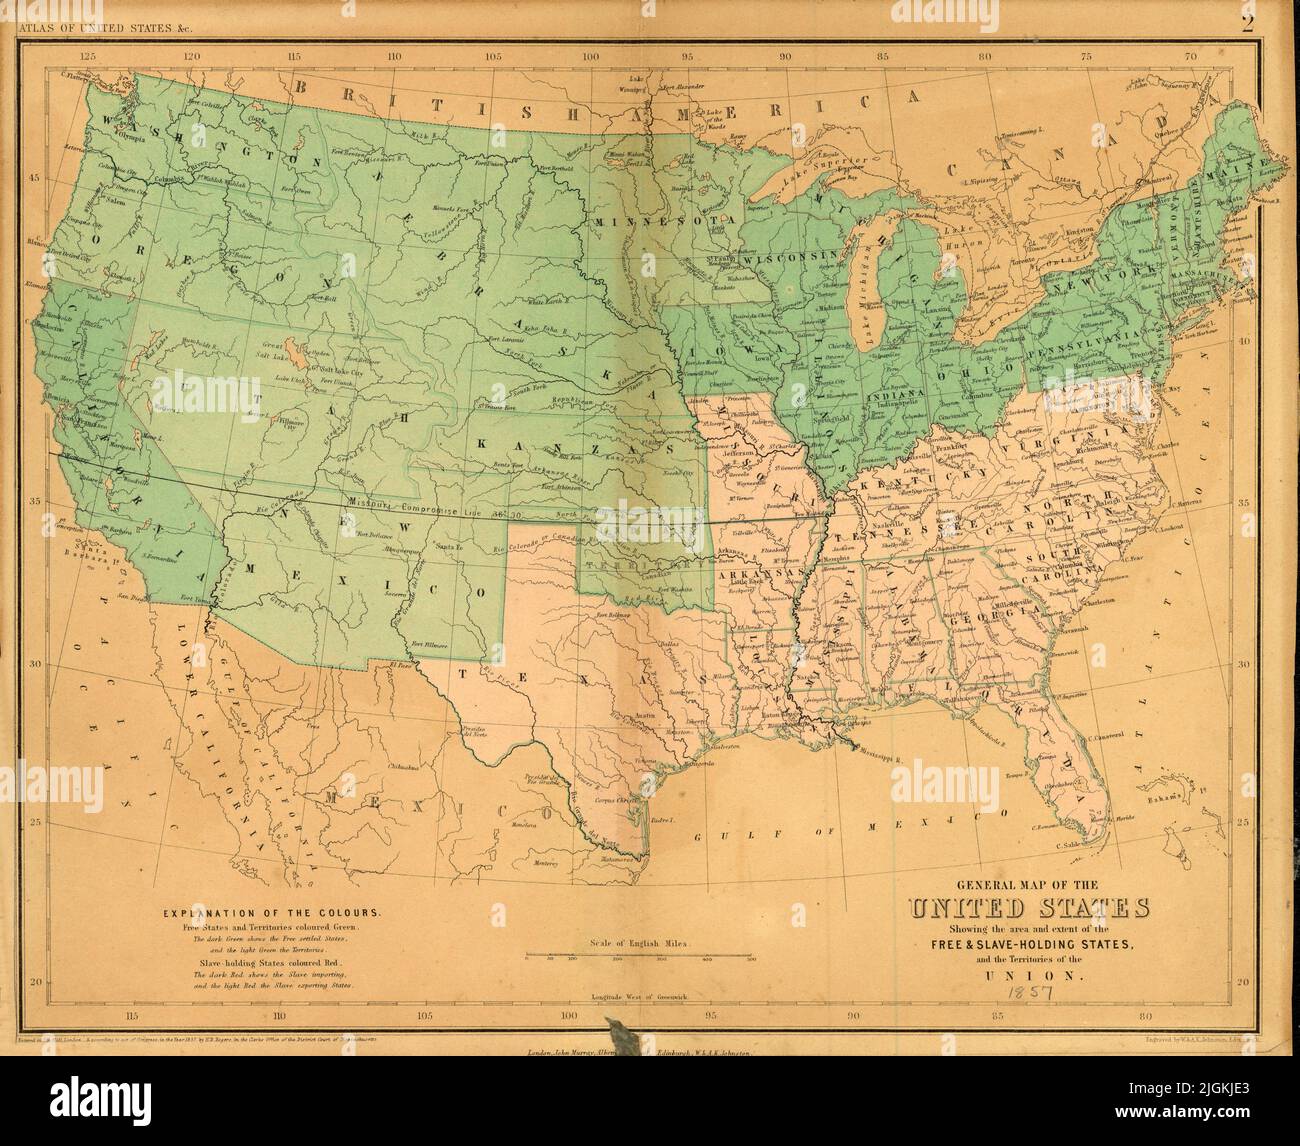 Mappa degli Stati Uniti, che mostra l'area e l'estensione degli Stati Holding liberi e schiavi, e territori dell'Unione, 1857, di Henry Darwin Rogers Foto Stock